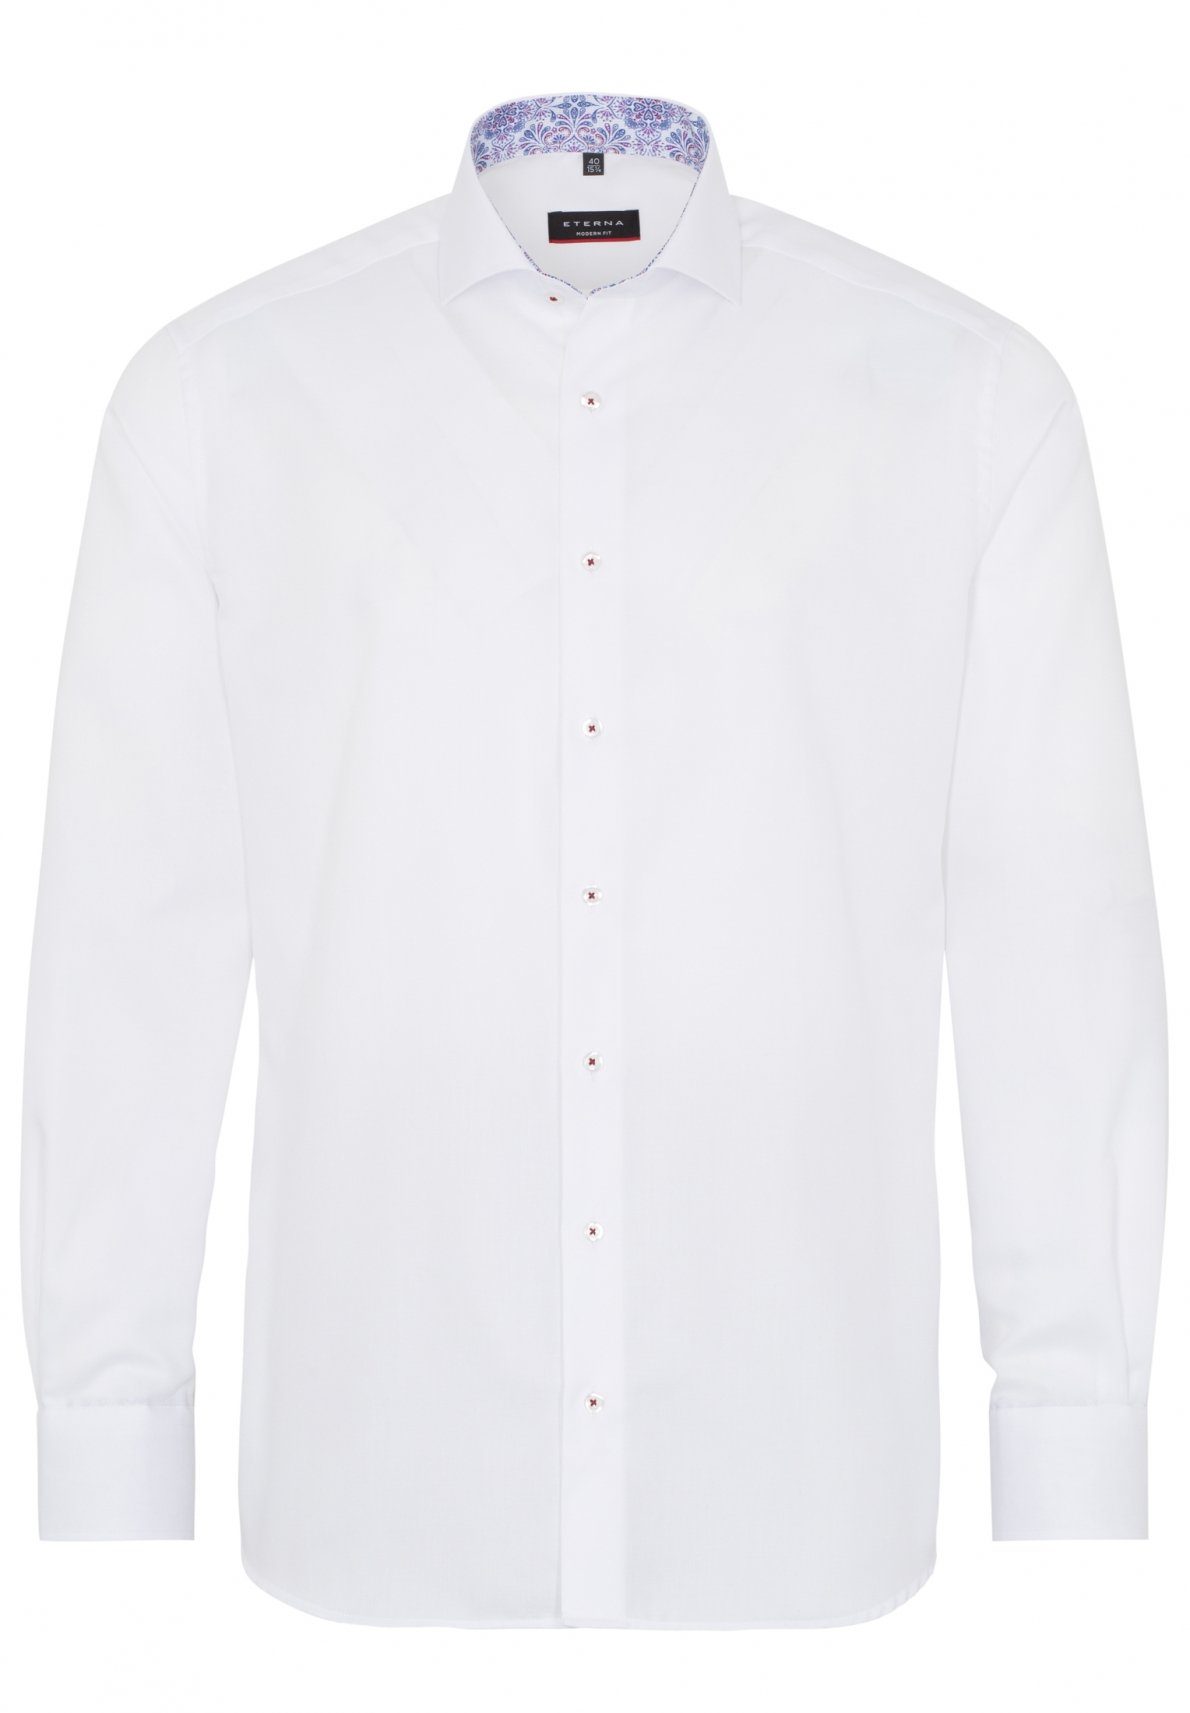 Eterna Klassische Bluse ETERNA MODERN FIT Langarm Hemd weiß strukturiert 3270-00-X15V